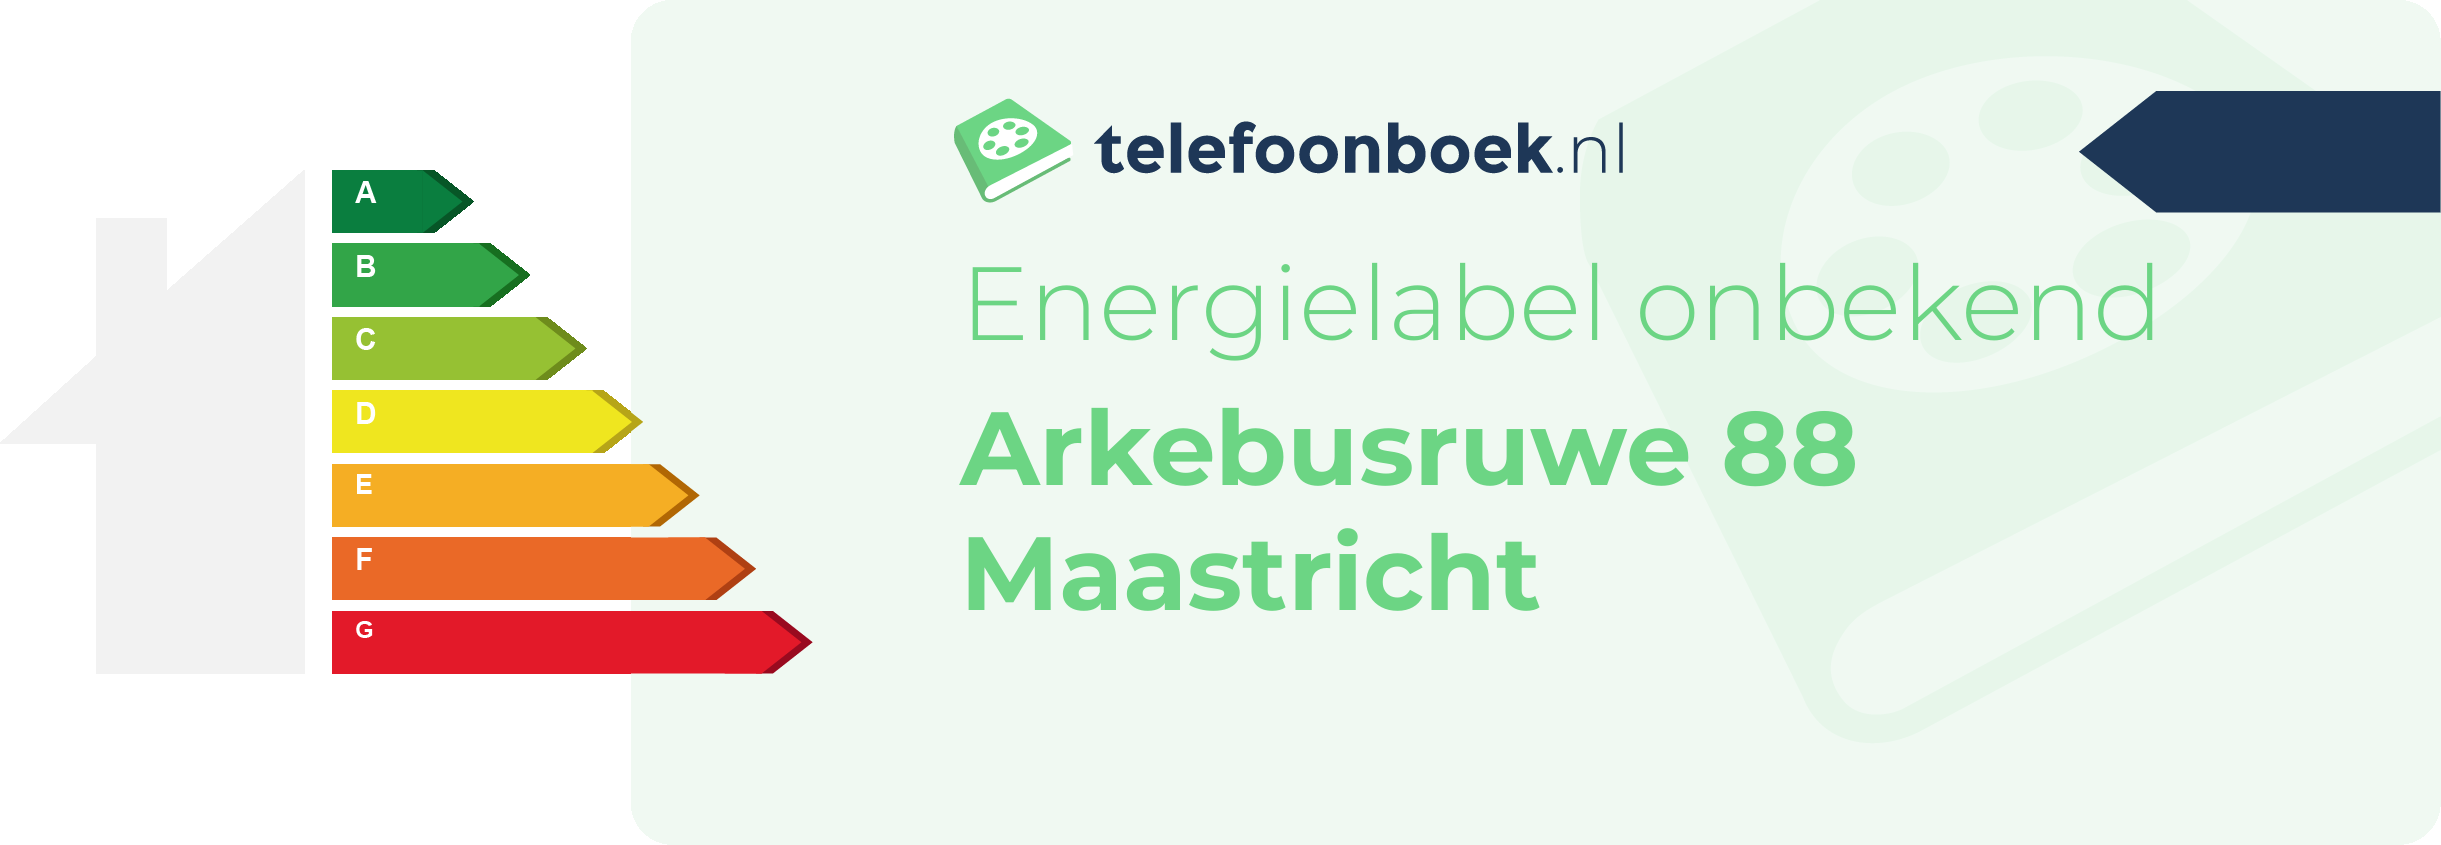 Energielabel Arkebusruwe 88 Maastricht